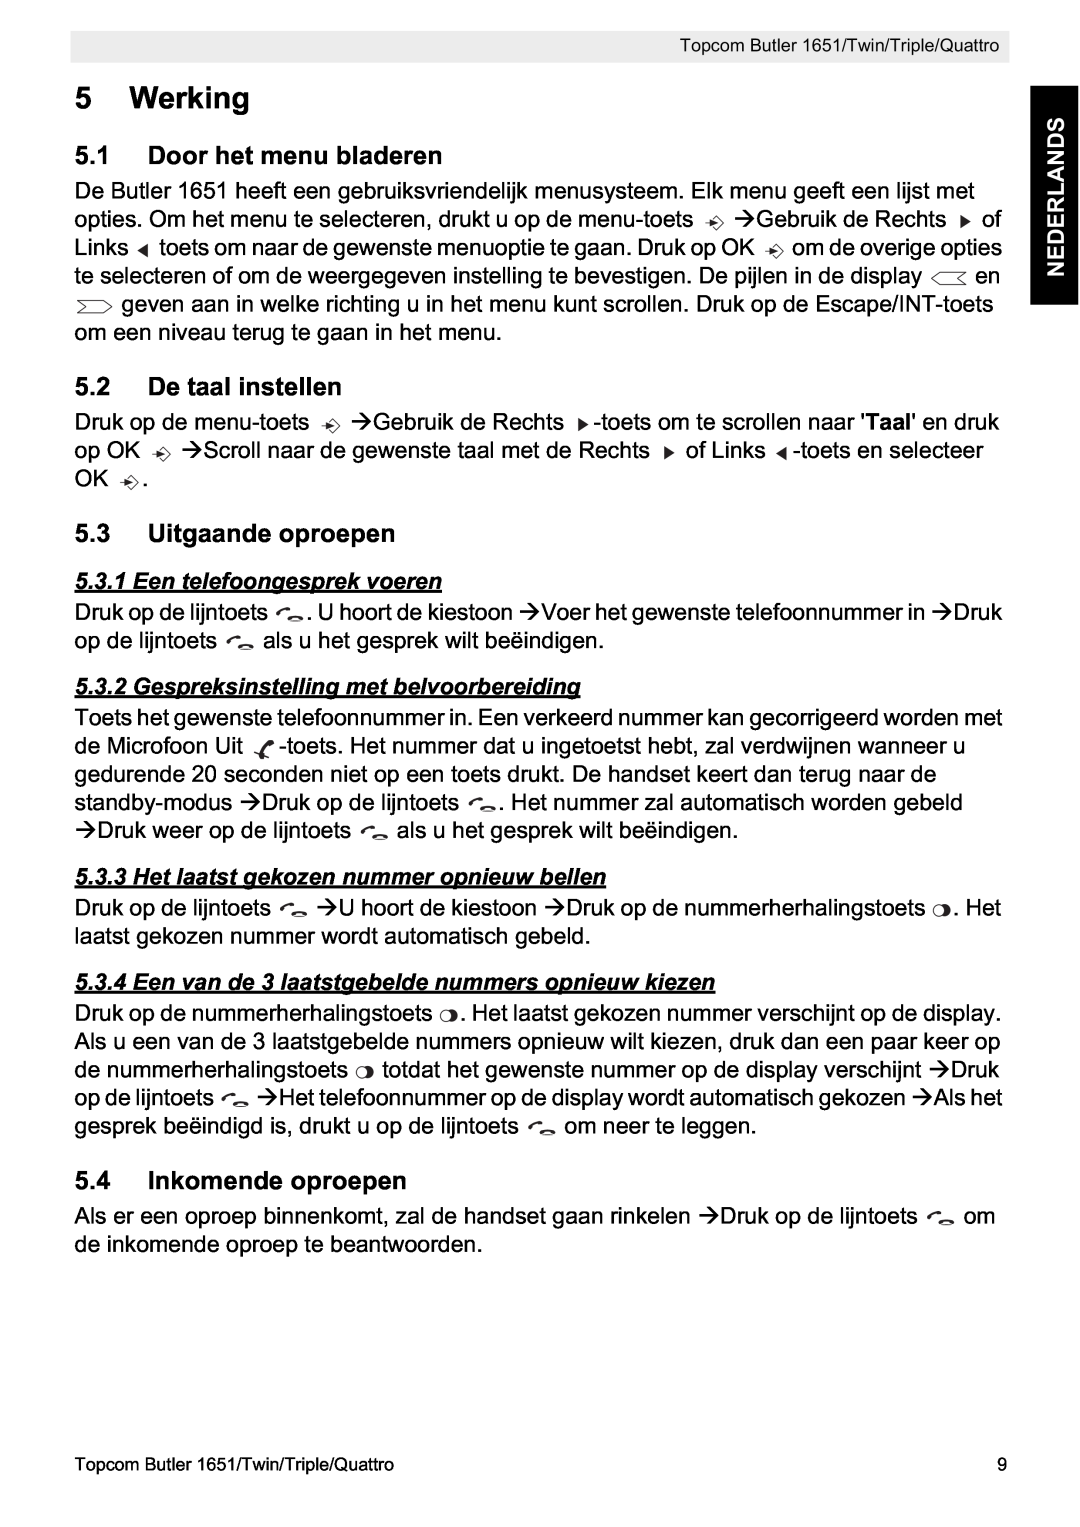 Topcom 1651 manual Werking, Door het menu bladeren, De taal instellen, Uitgaande oproepen, Inkomende oproepen, Nederlands 